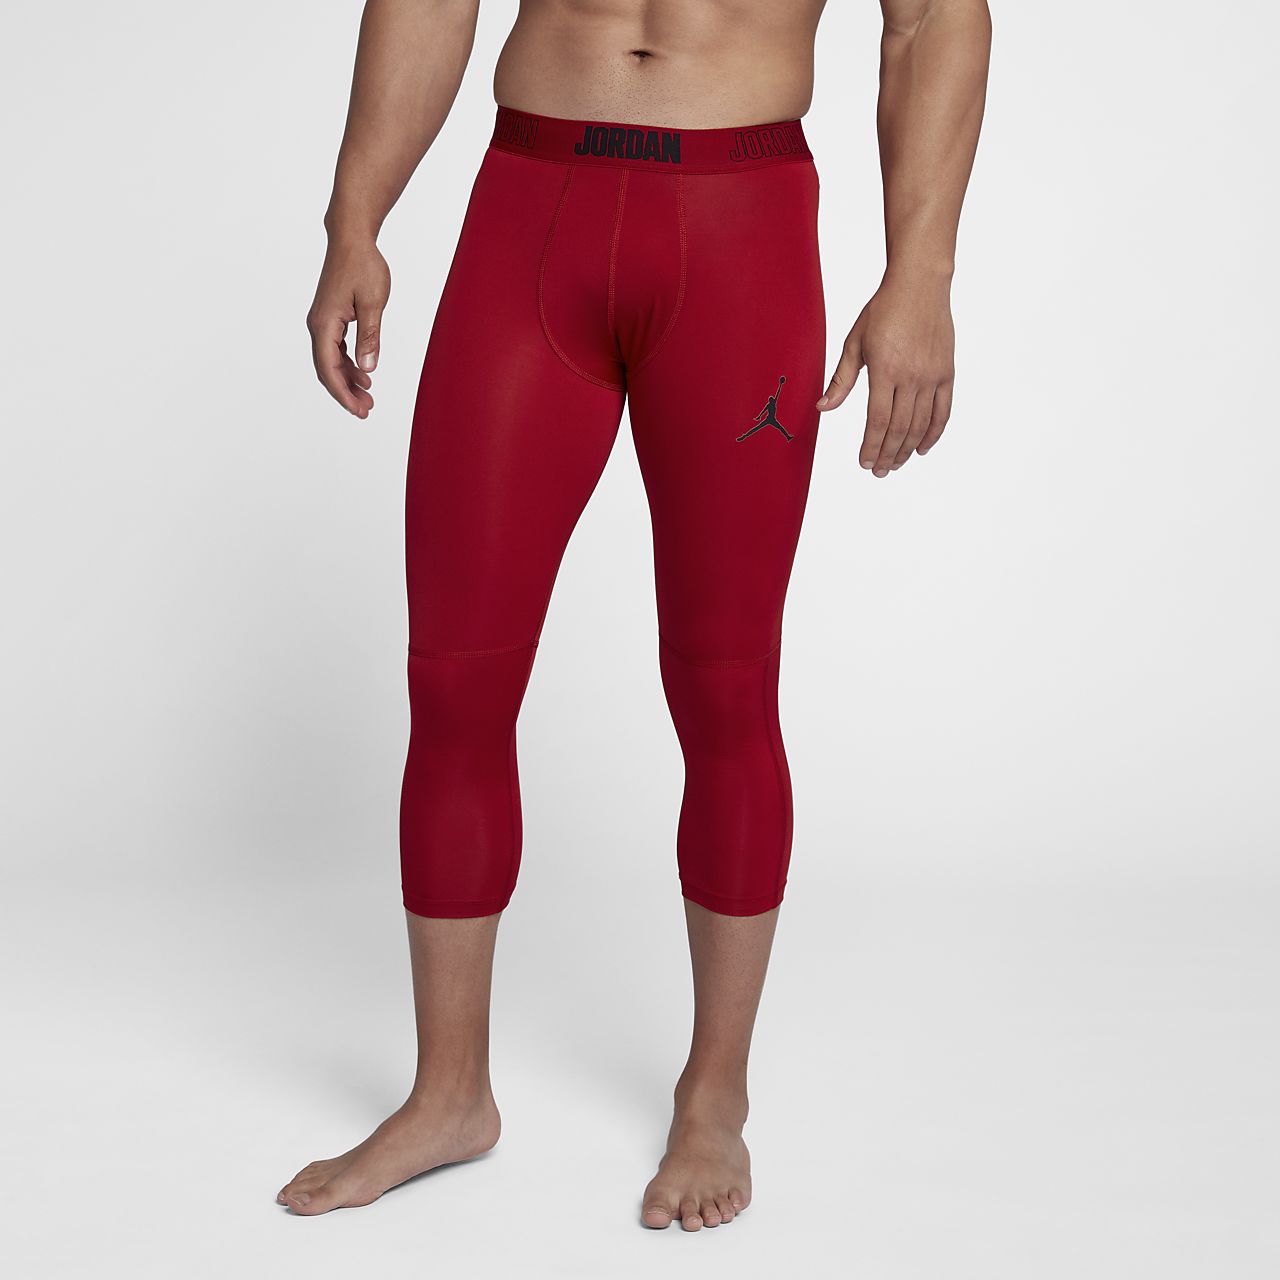 red jordan leggings